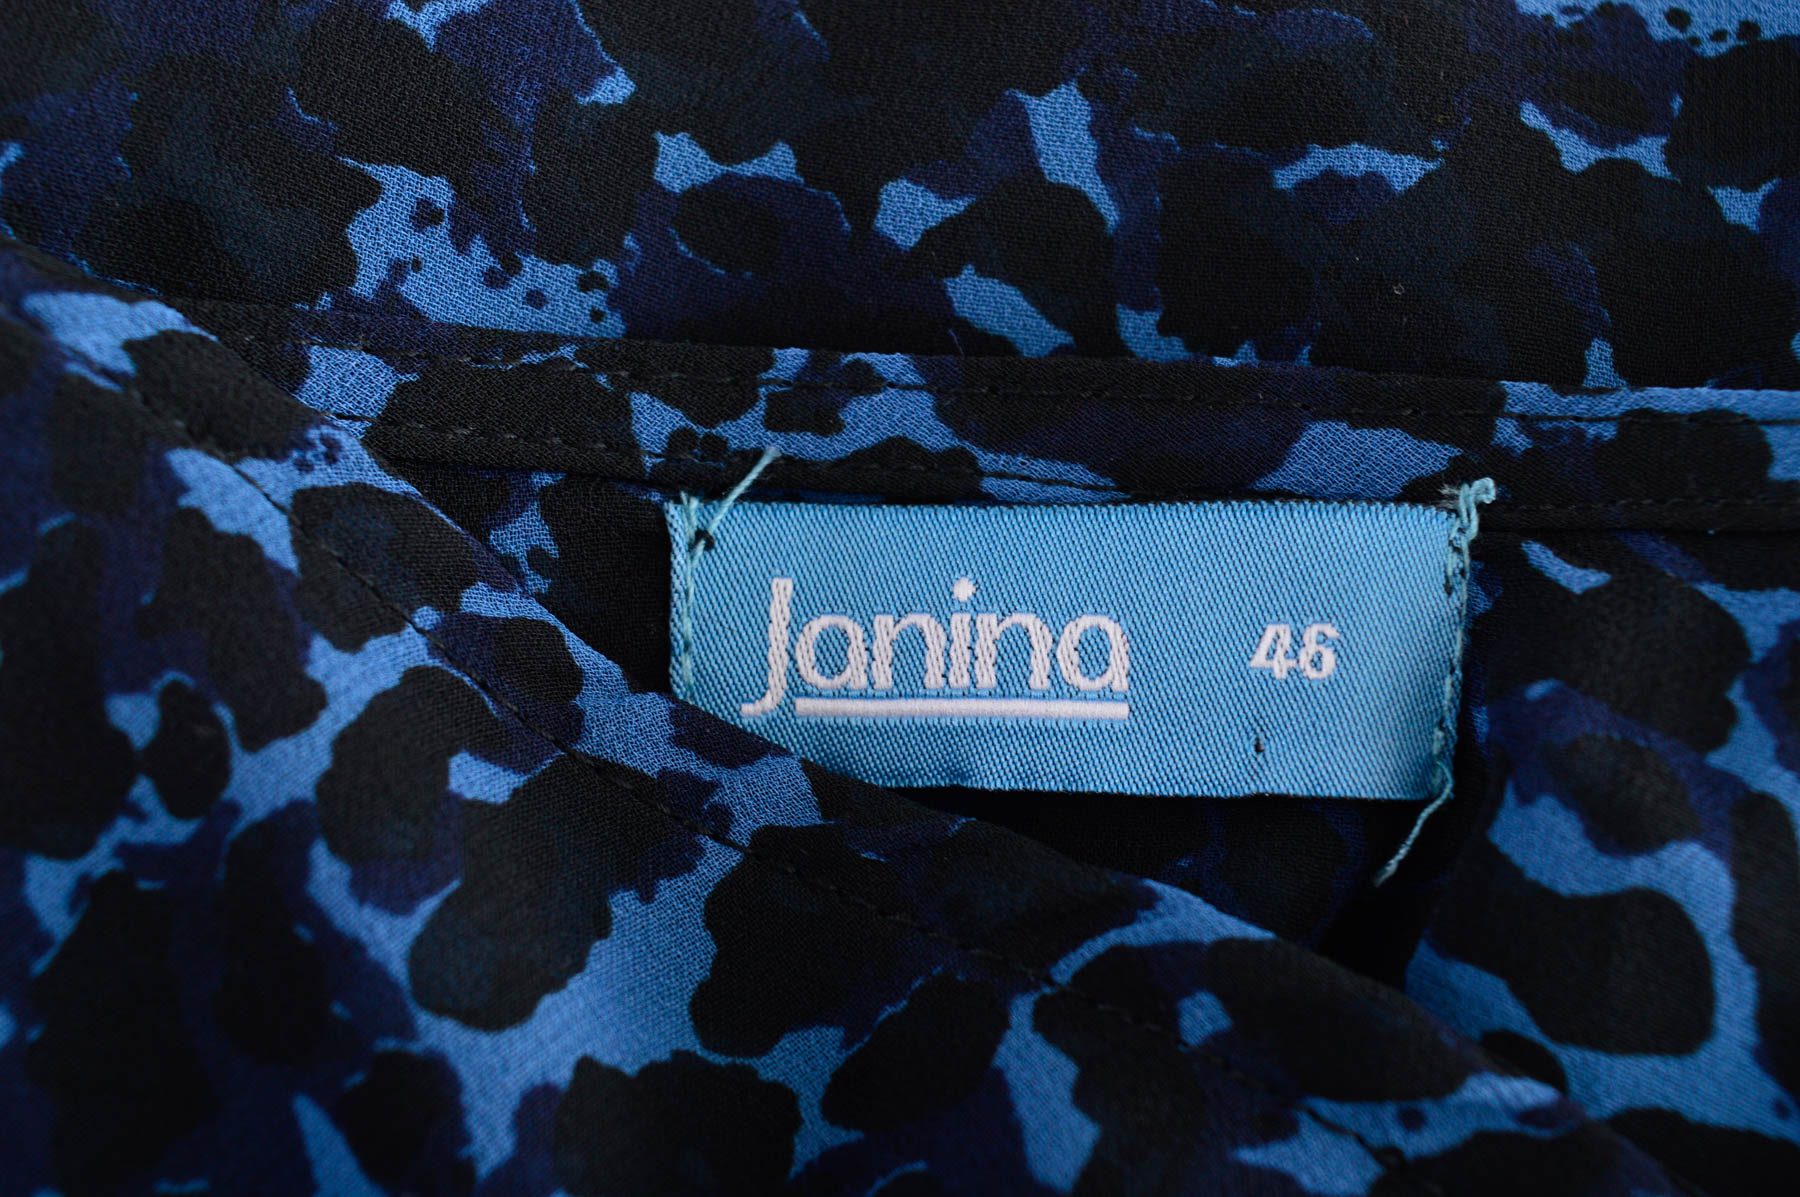 Γυναικείο πουκάμισο - Janina - 2